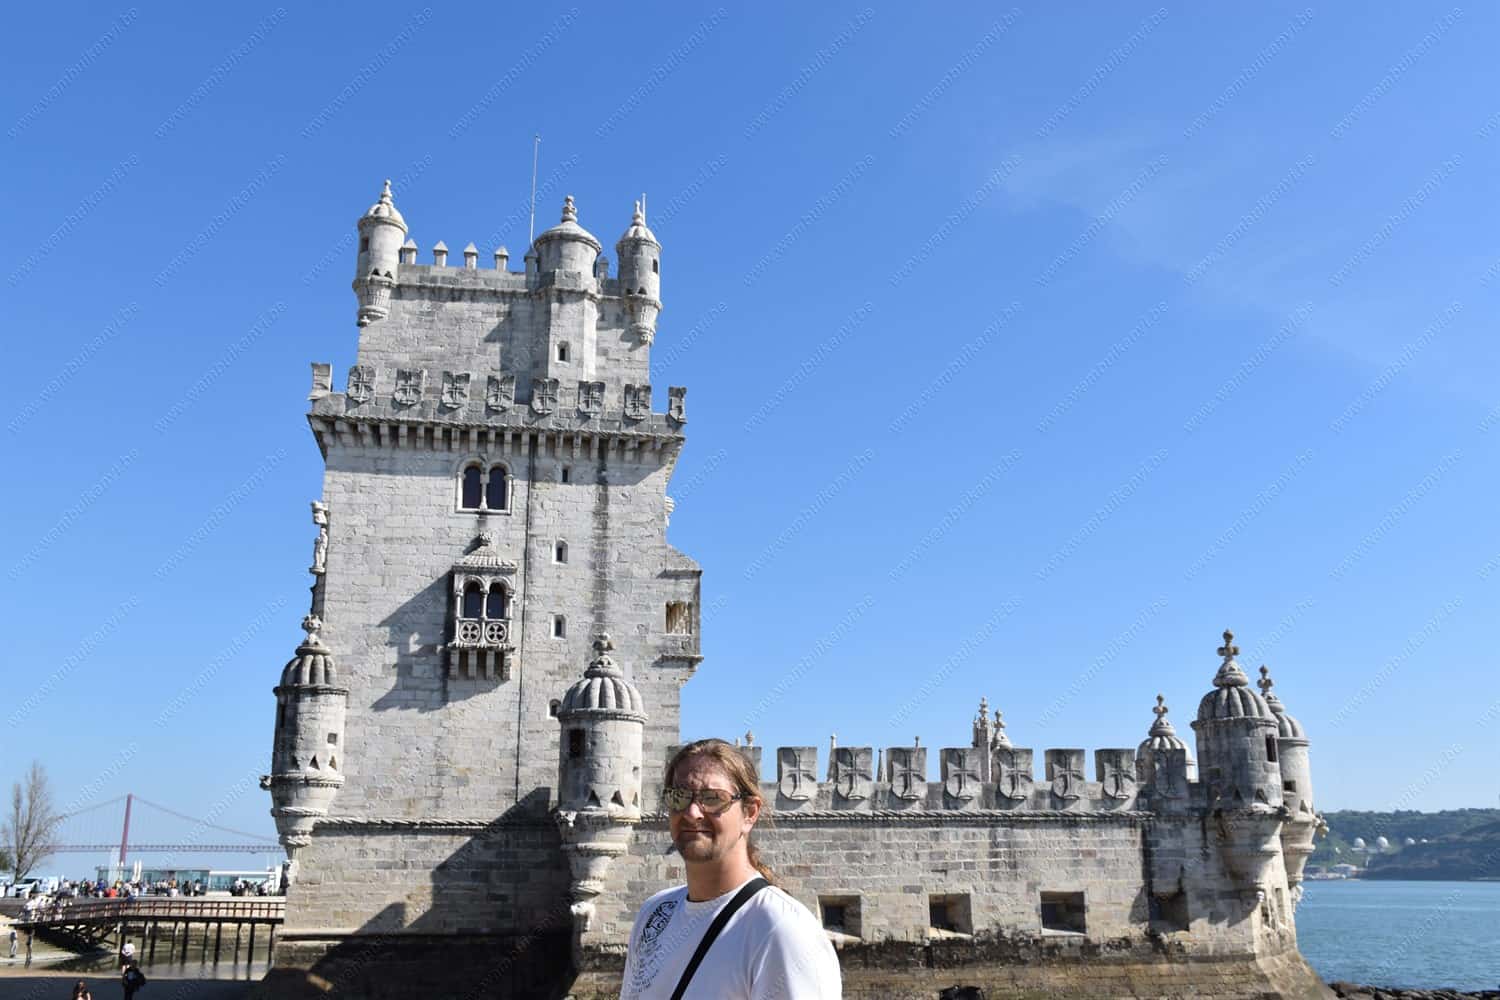 Torre de Belem - Top Attractions to Visit in Lisbon